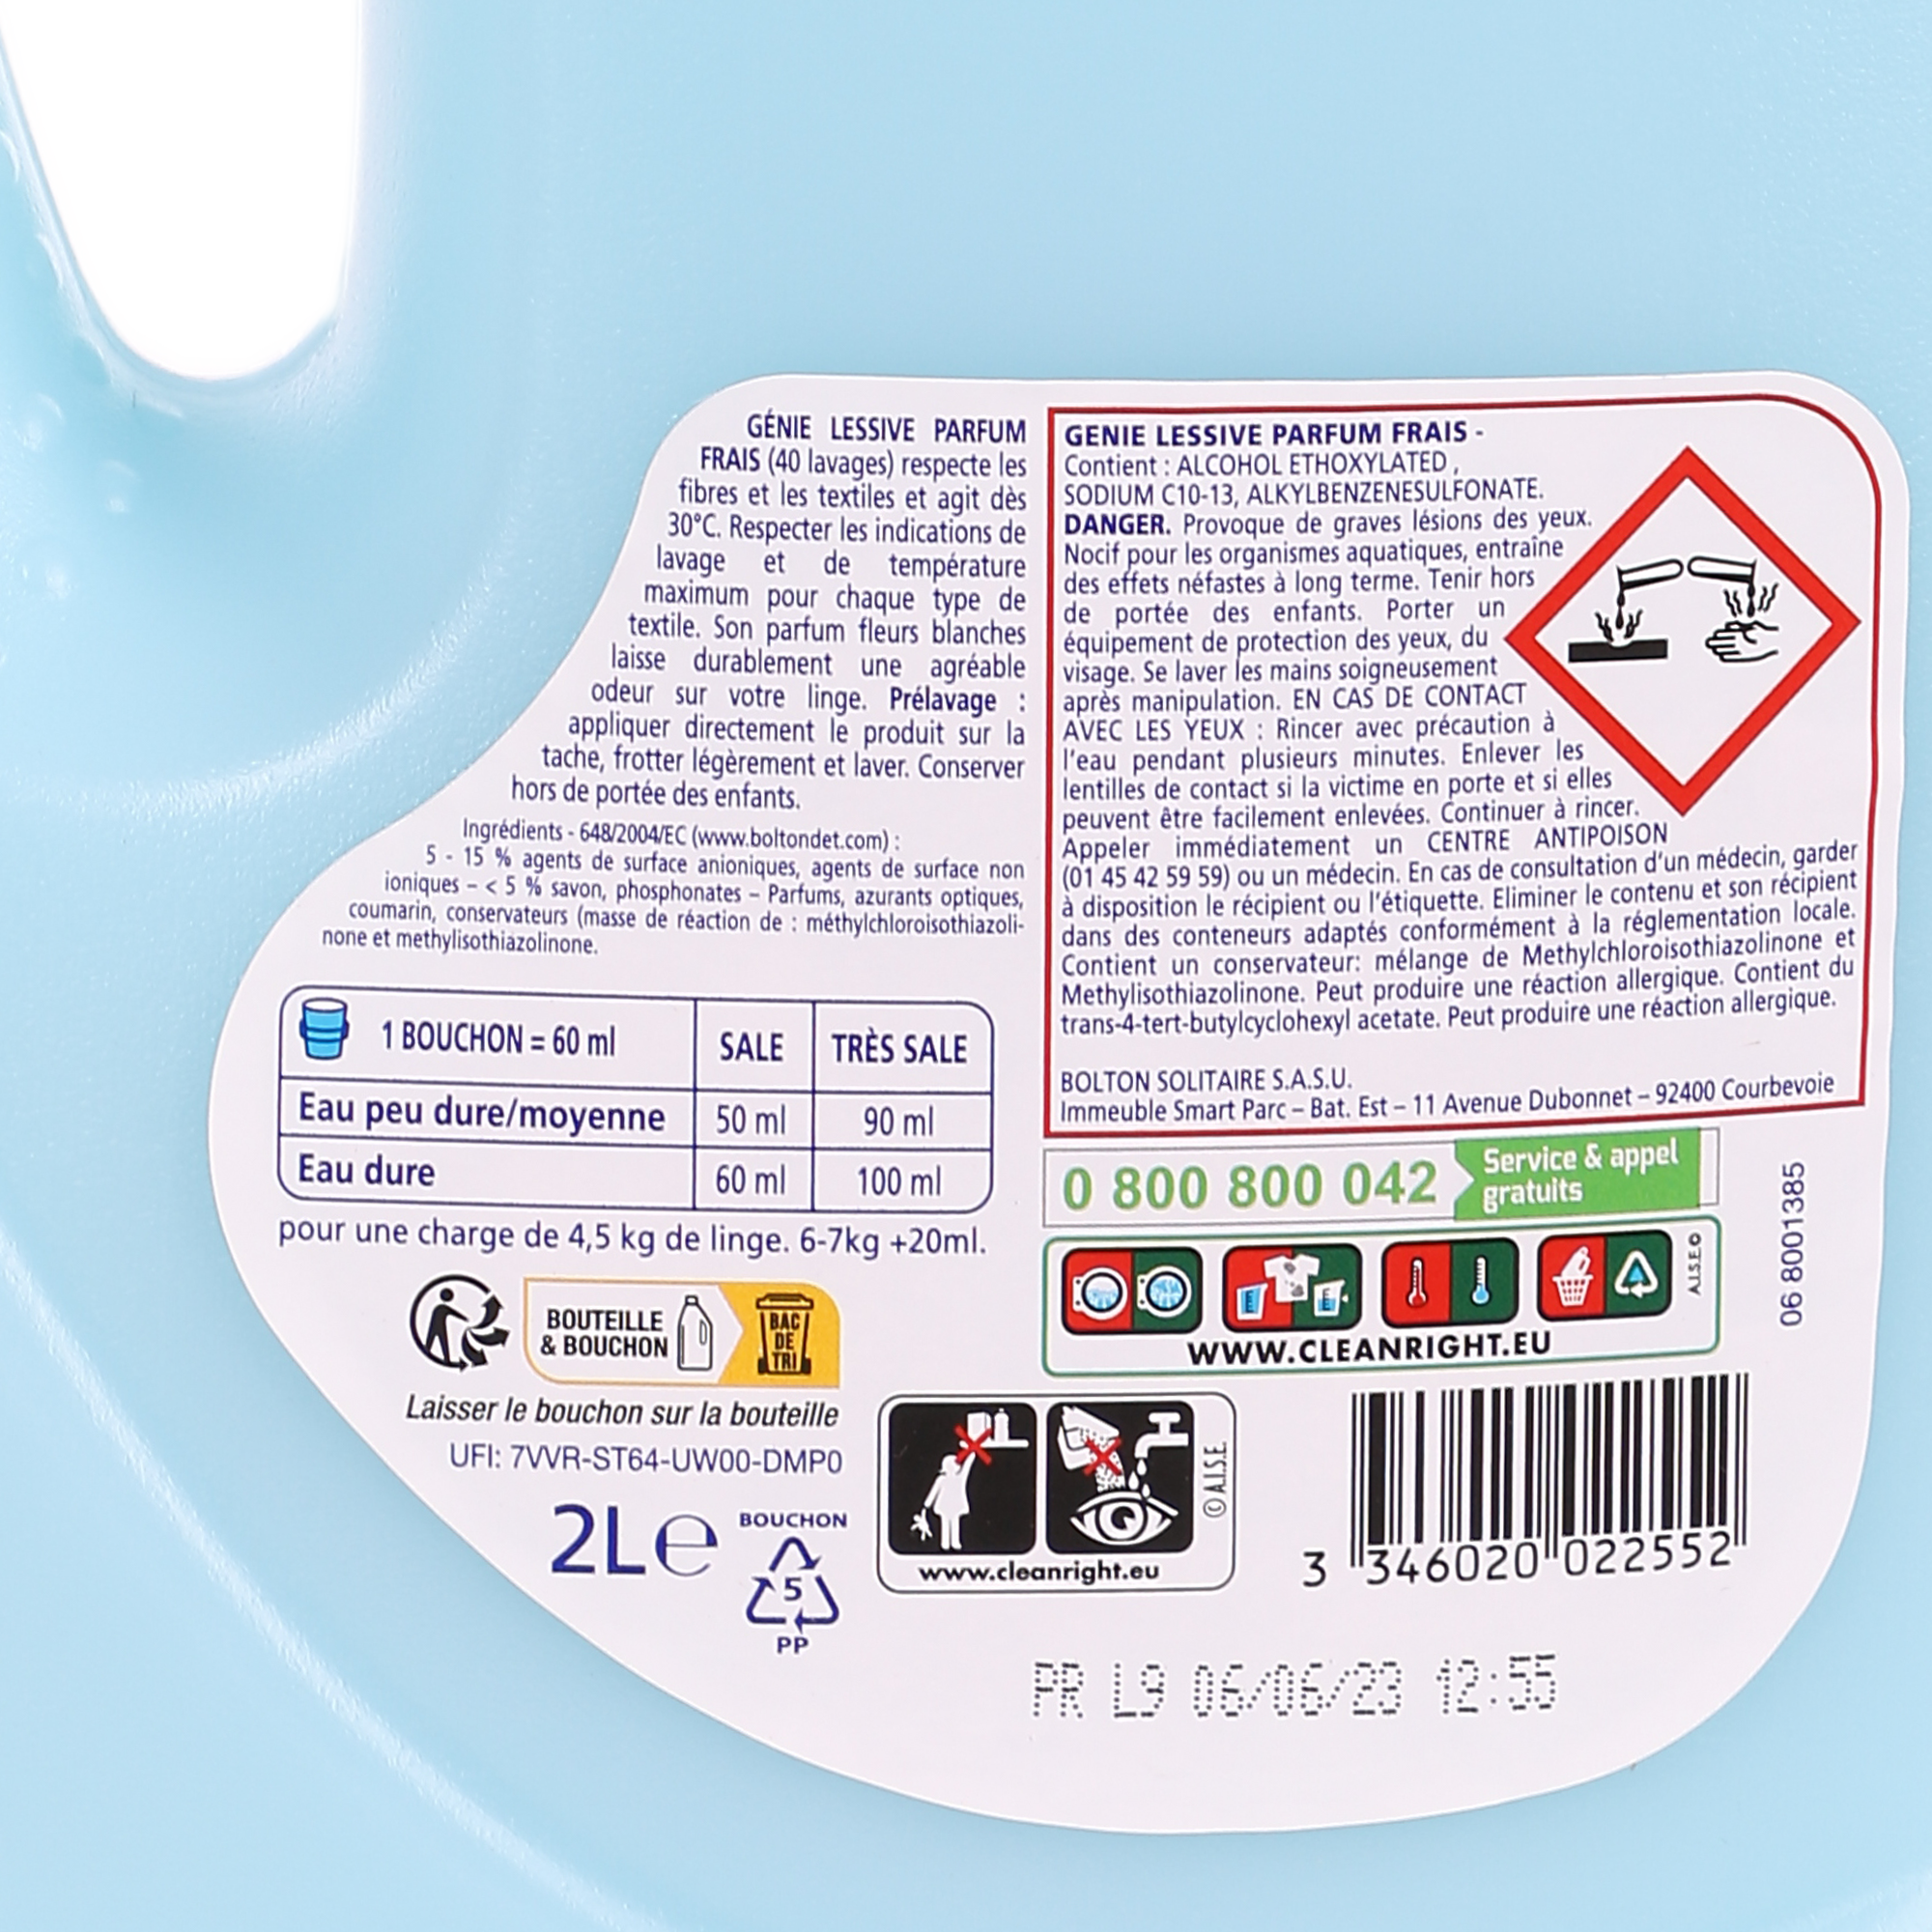 Promo Xtra les 80 doses de lessive liquide fraîcheur ou les 80 doses de lessive  liquide total + encore plus frais chez Stokomani